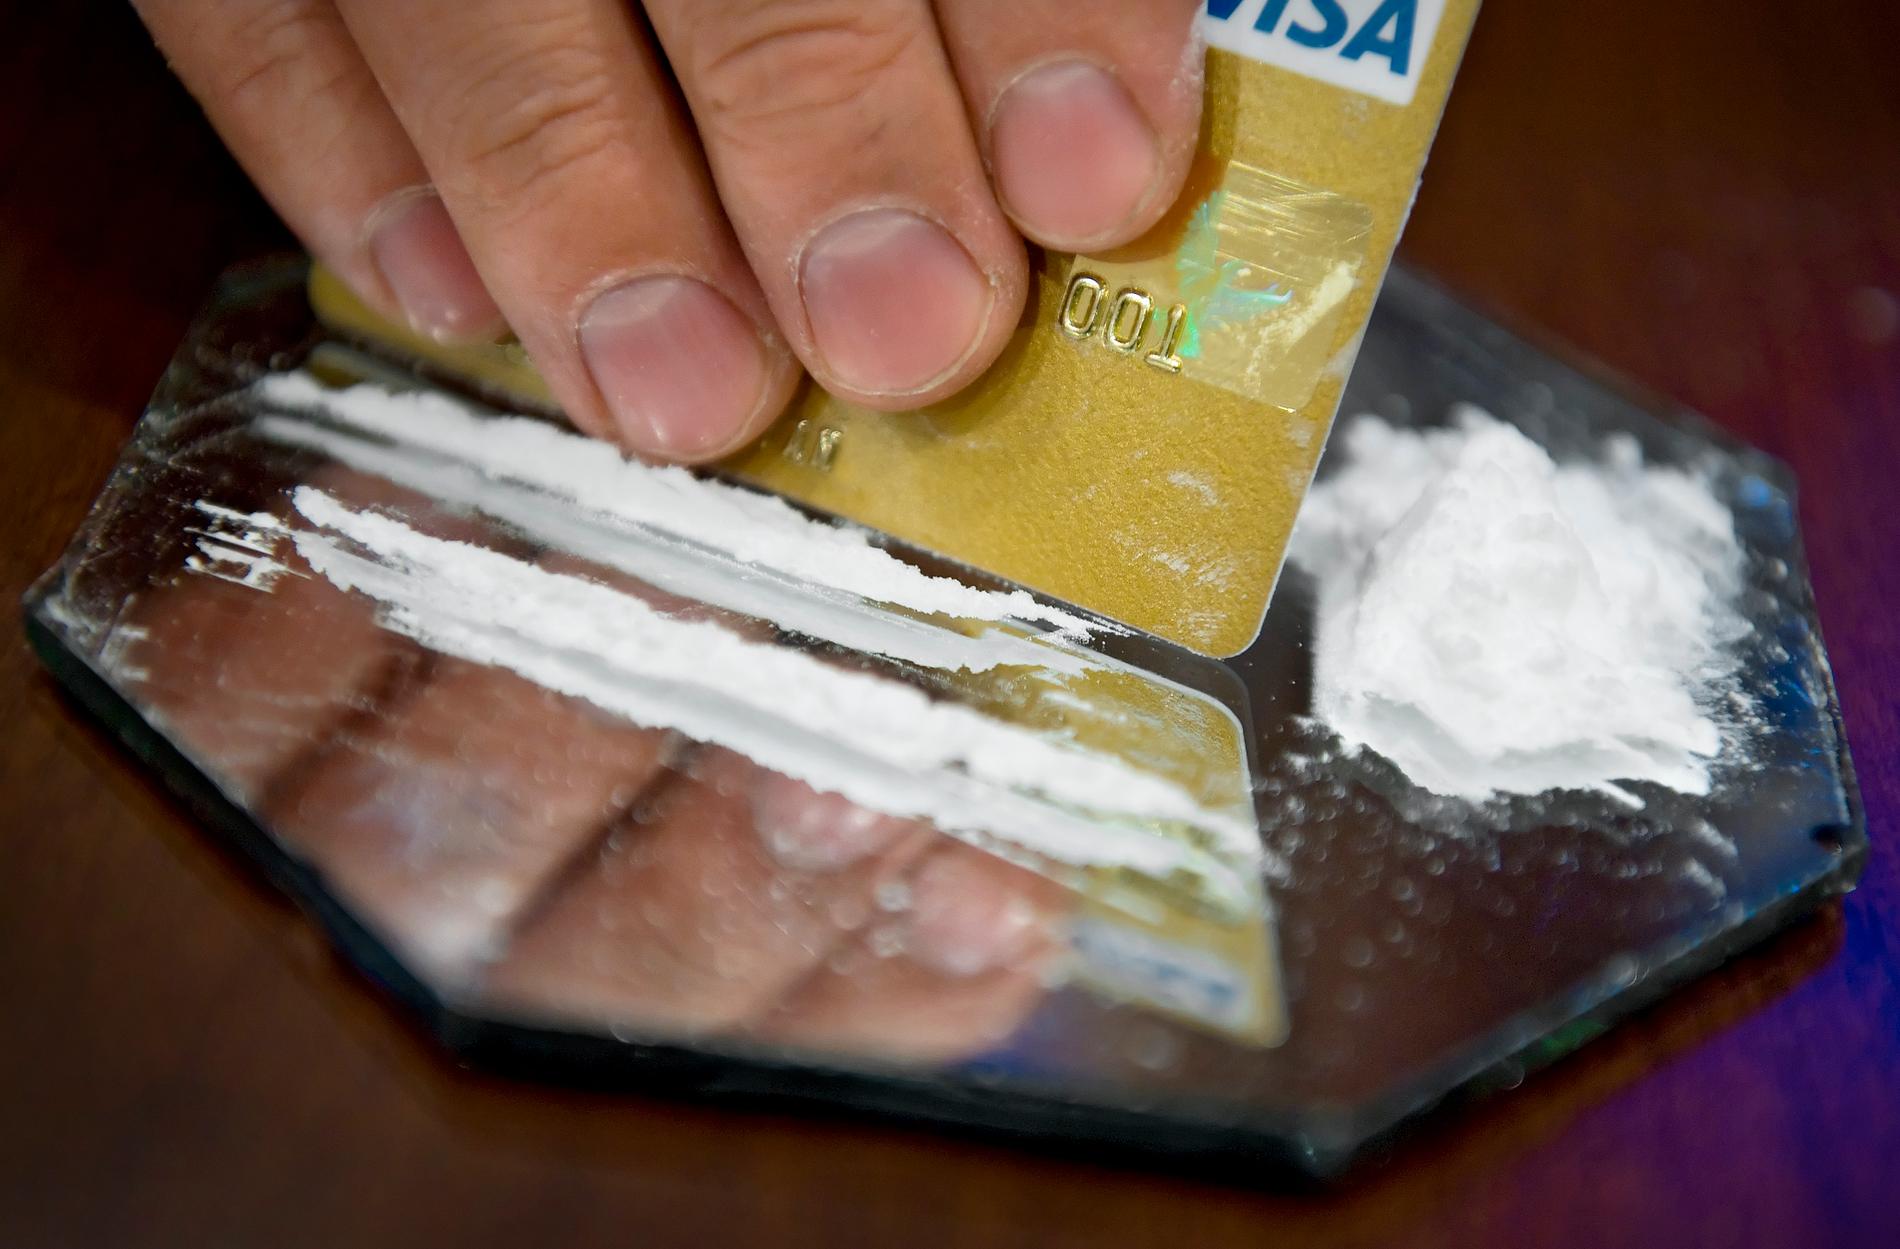 Kokainanvändningen har ökat i Piteåtrakten. Arkivbild.